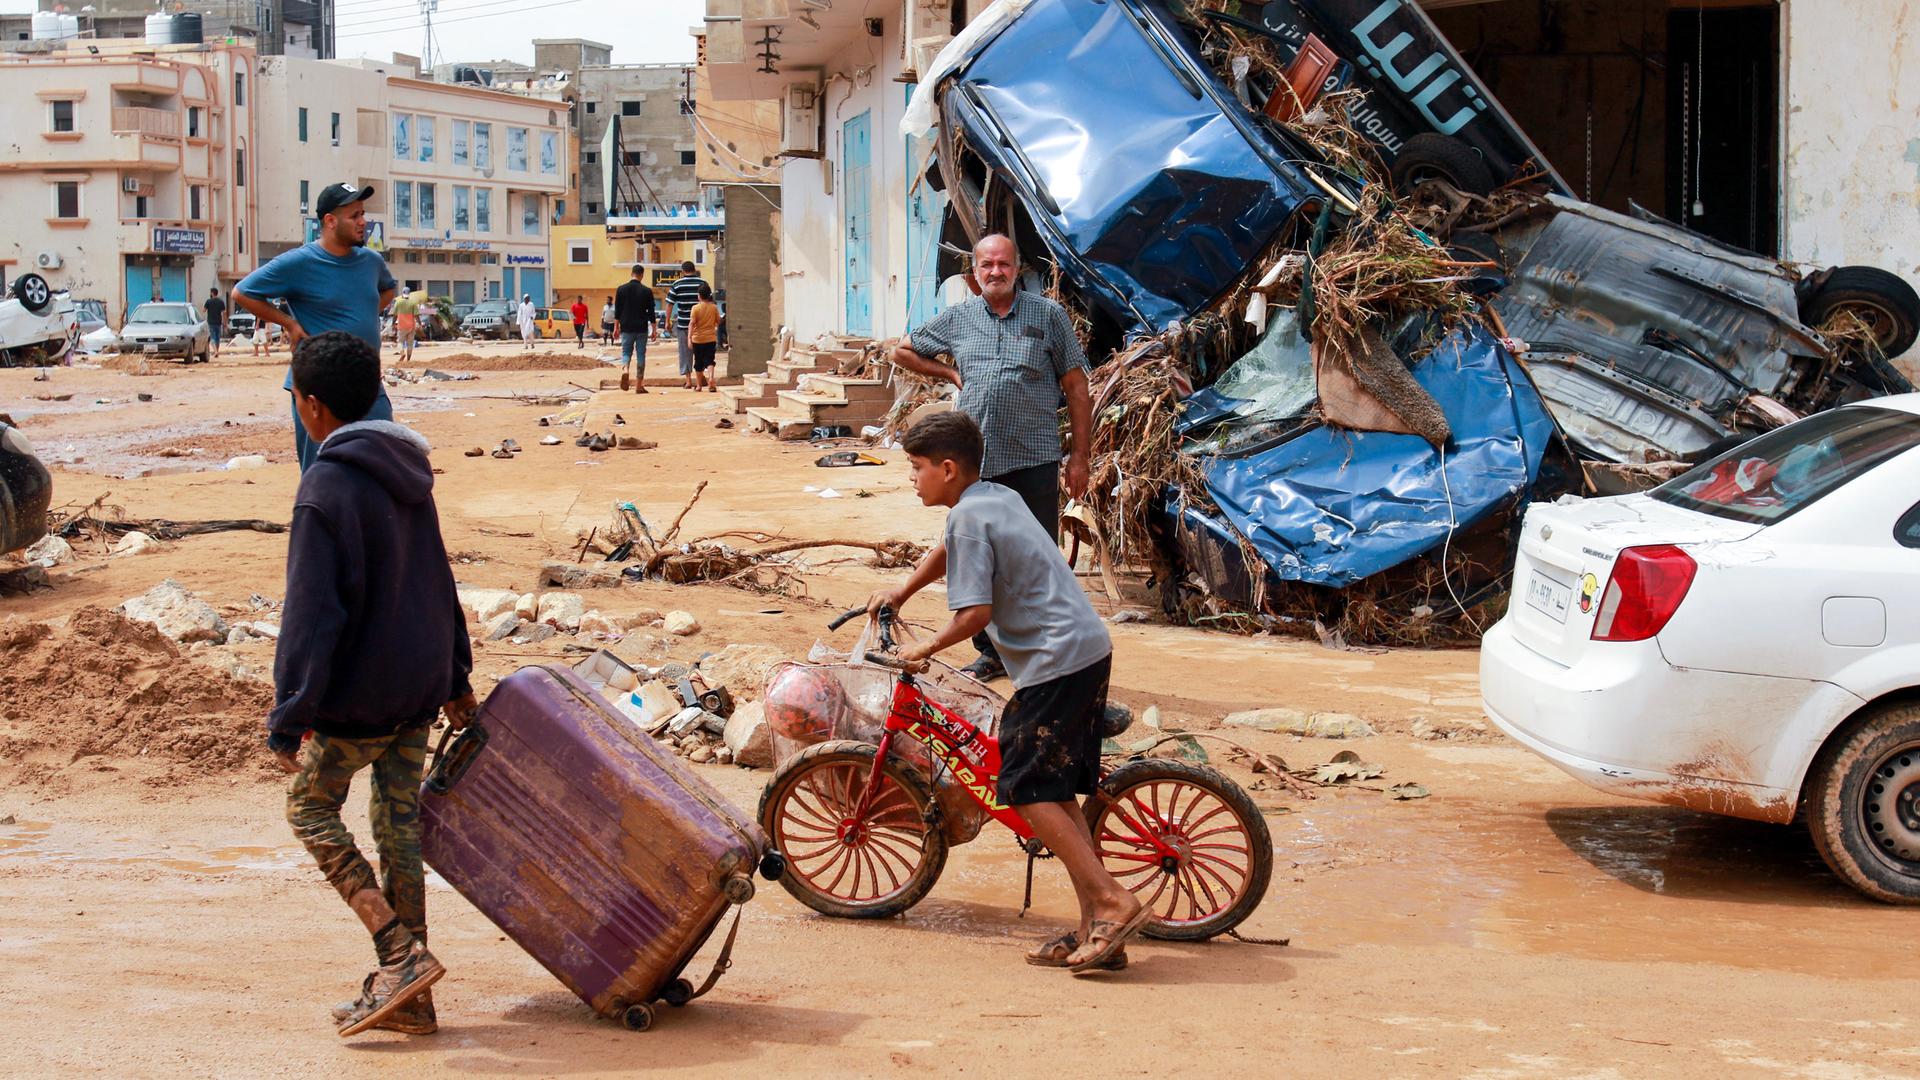 Zu sehen sind Menschen in der lybischen Großstadt Derna, nach der Überflutung der Stadt.